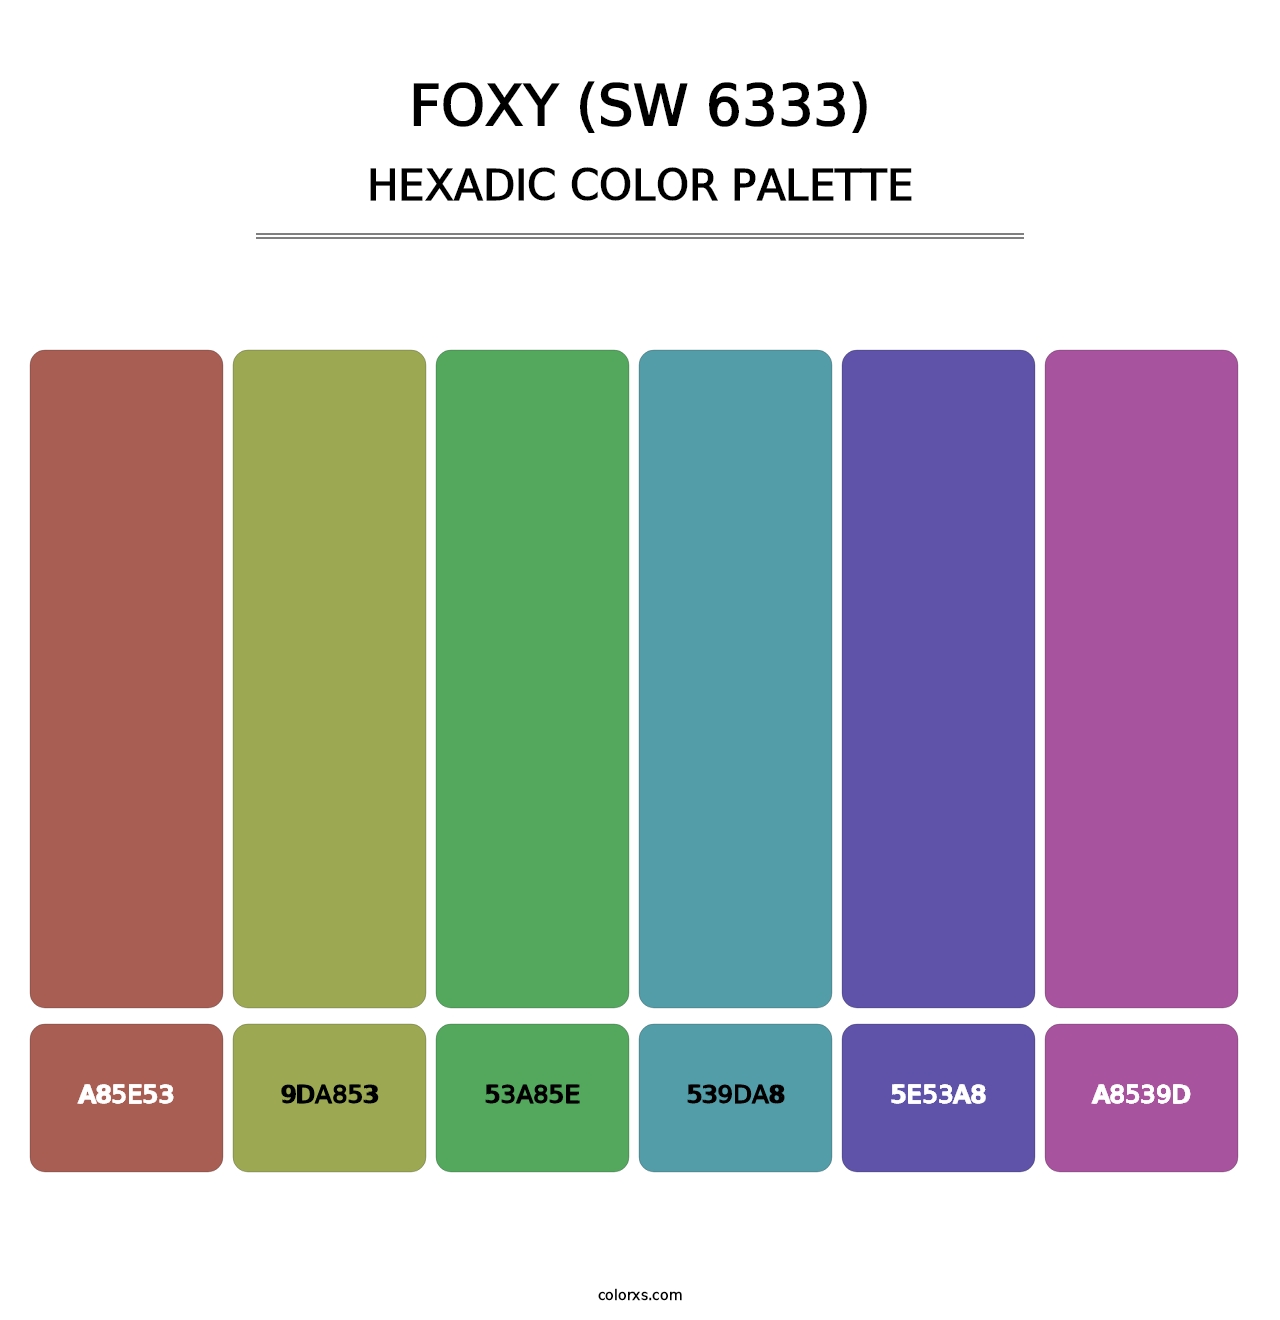 Foxy (SW 6333) - Hexadic Color Palette